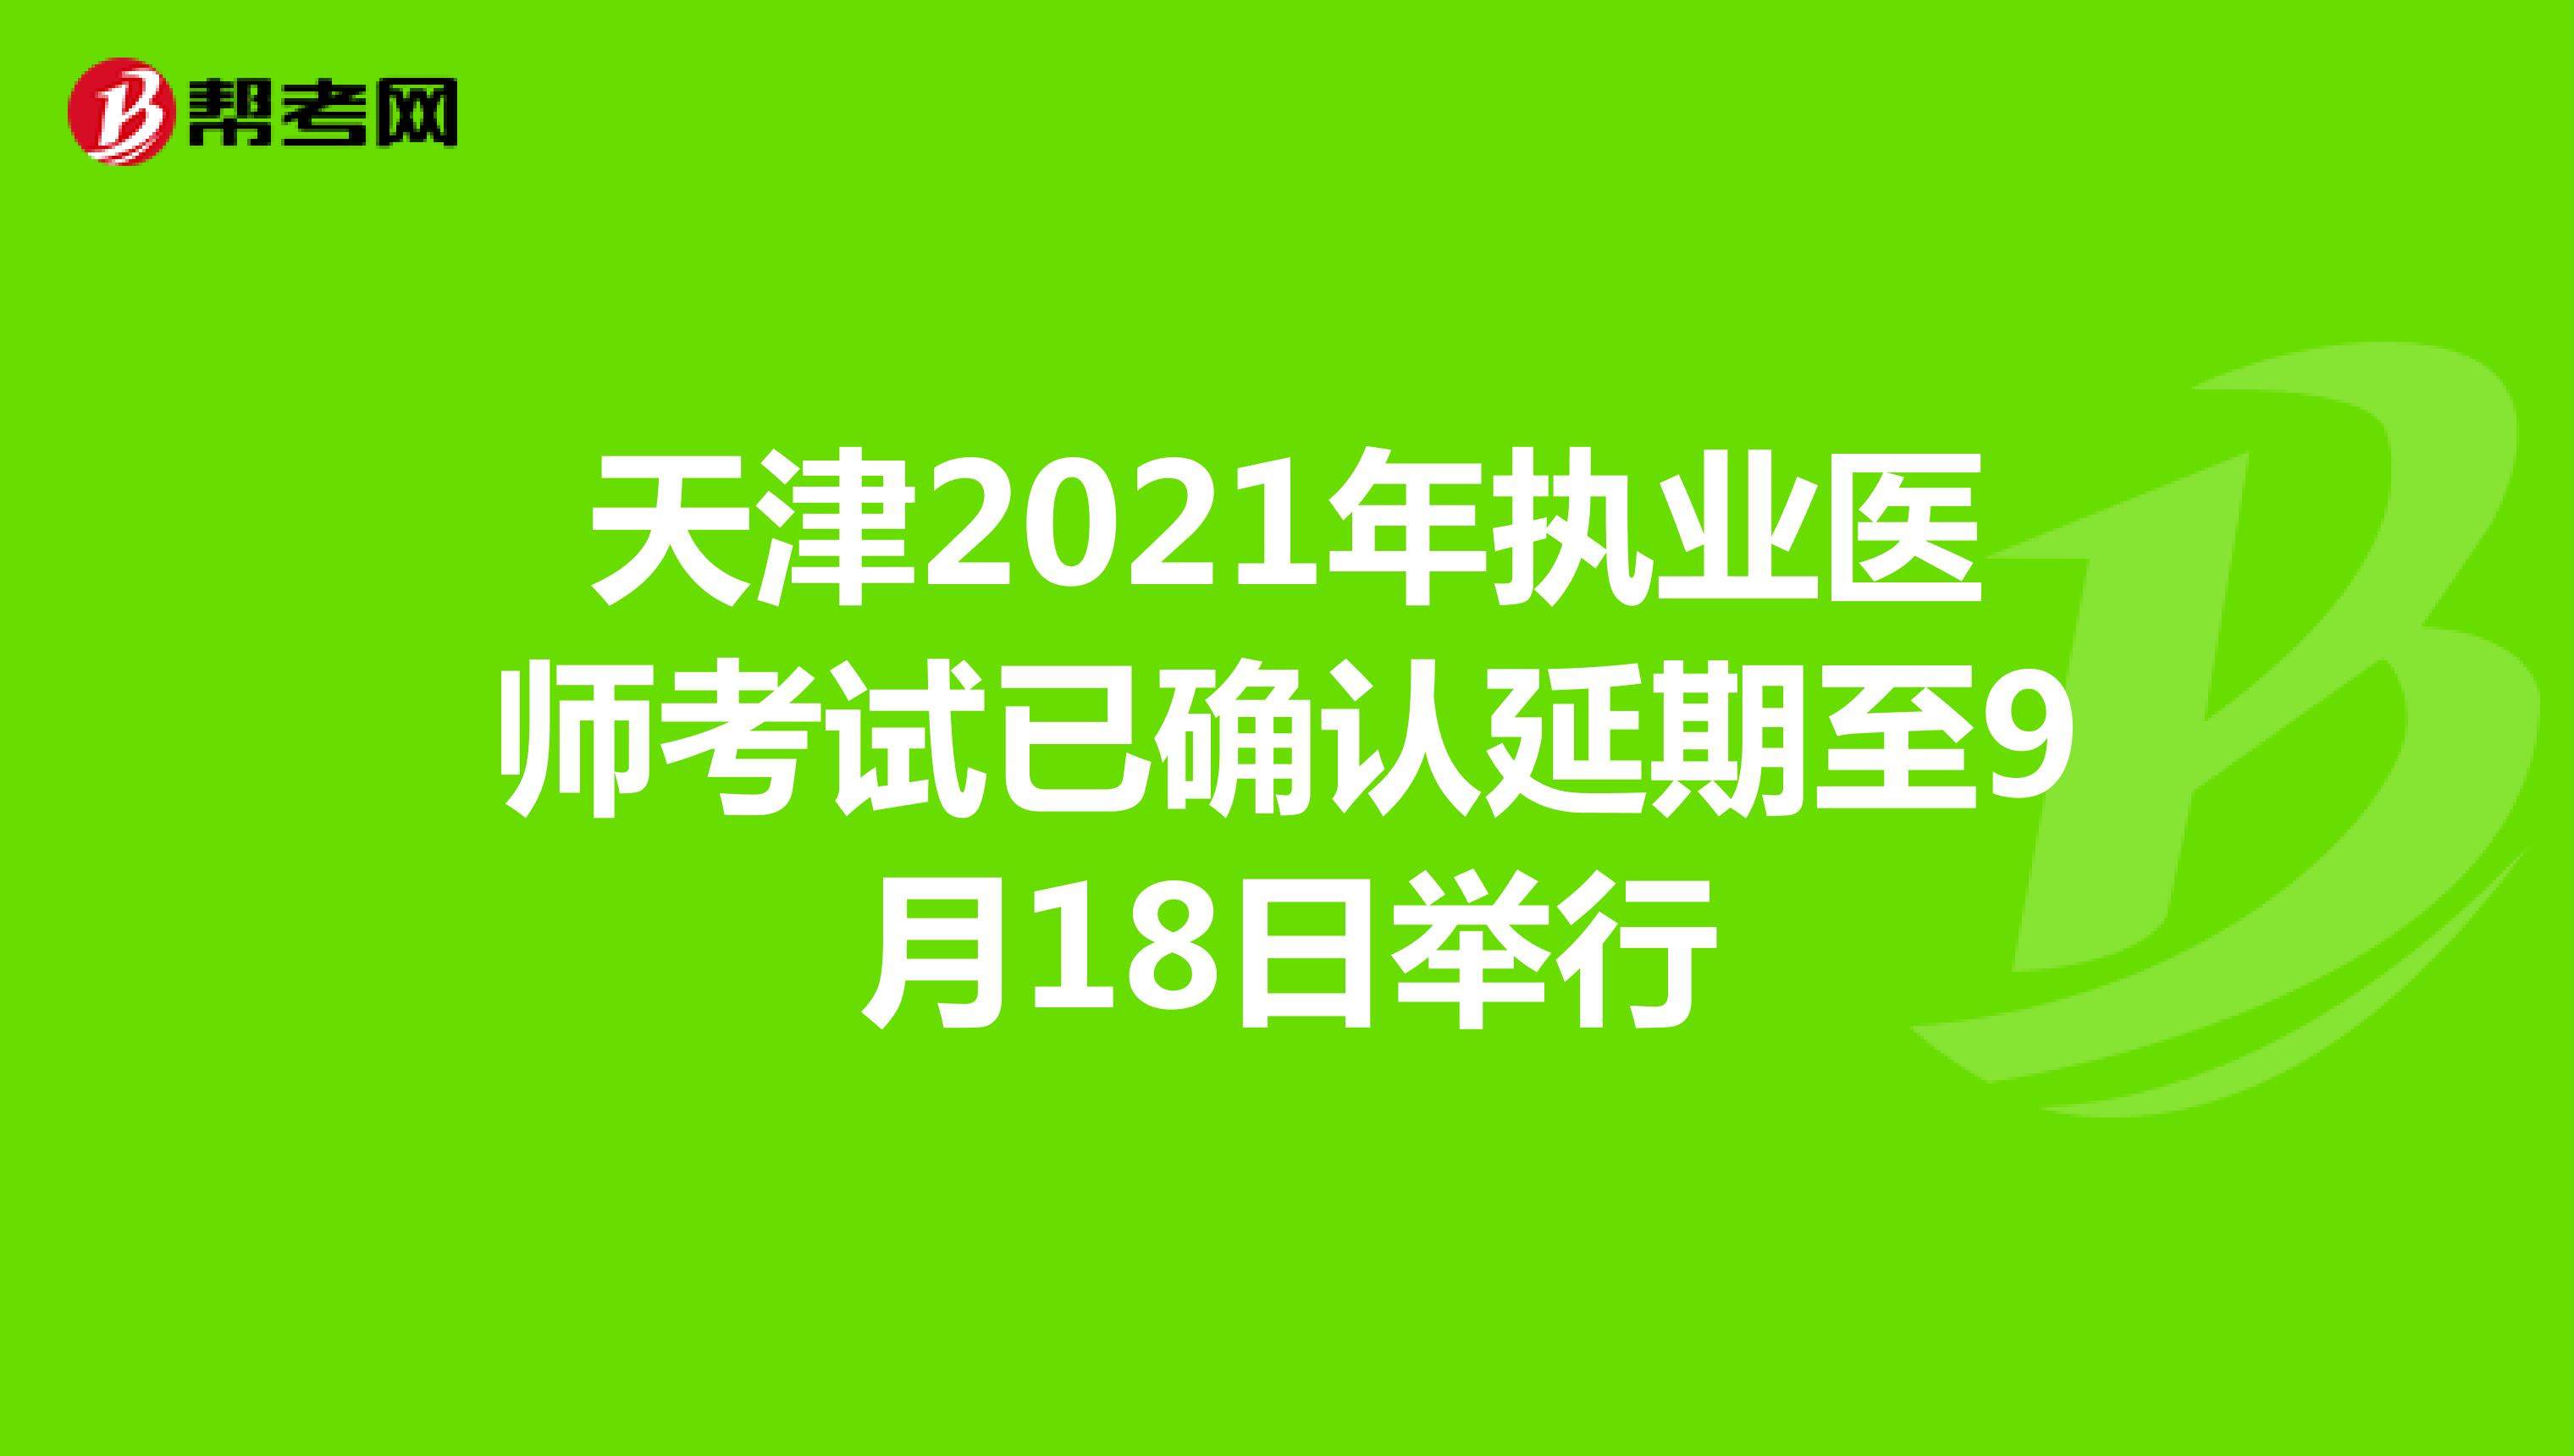 天津2021年执业医师考试已确认延期至9月18日举行